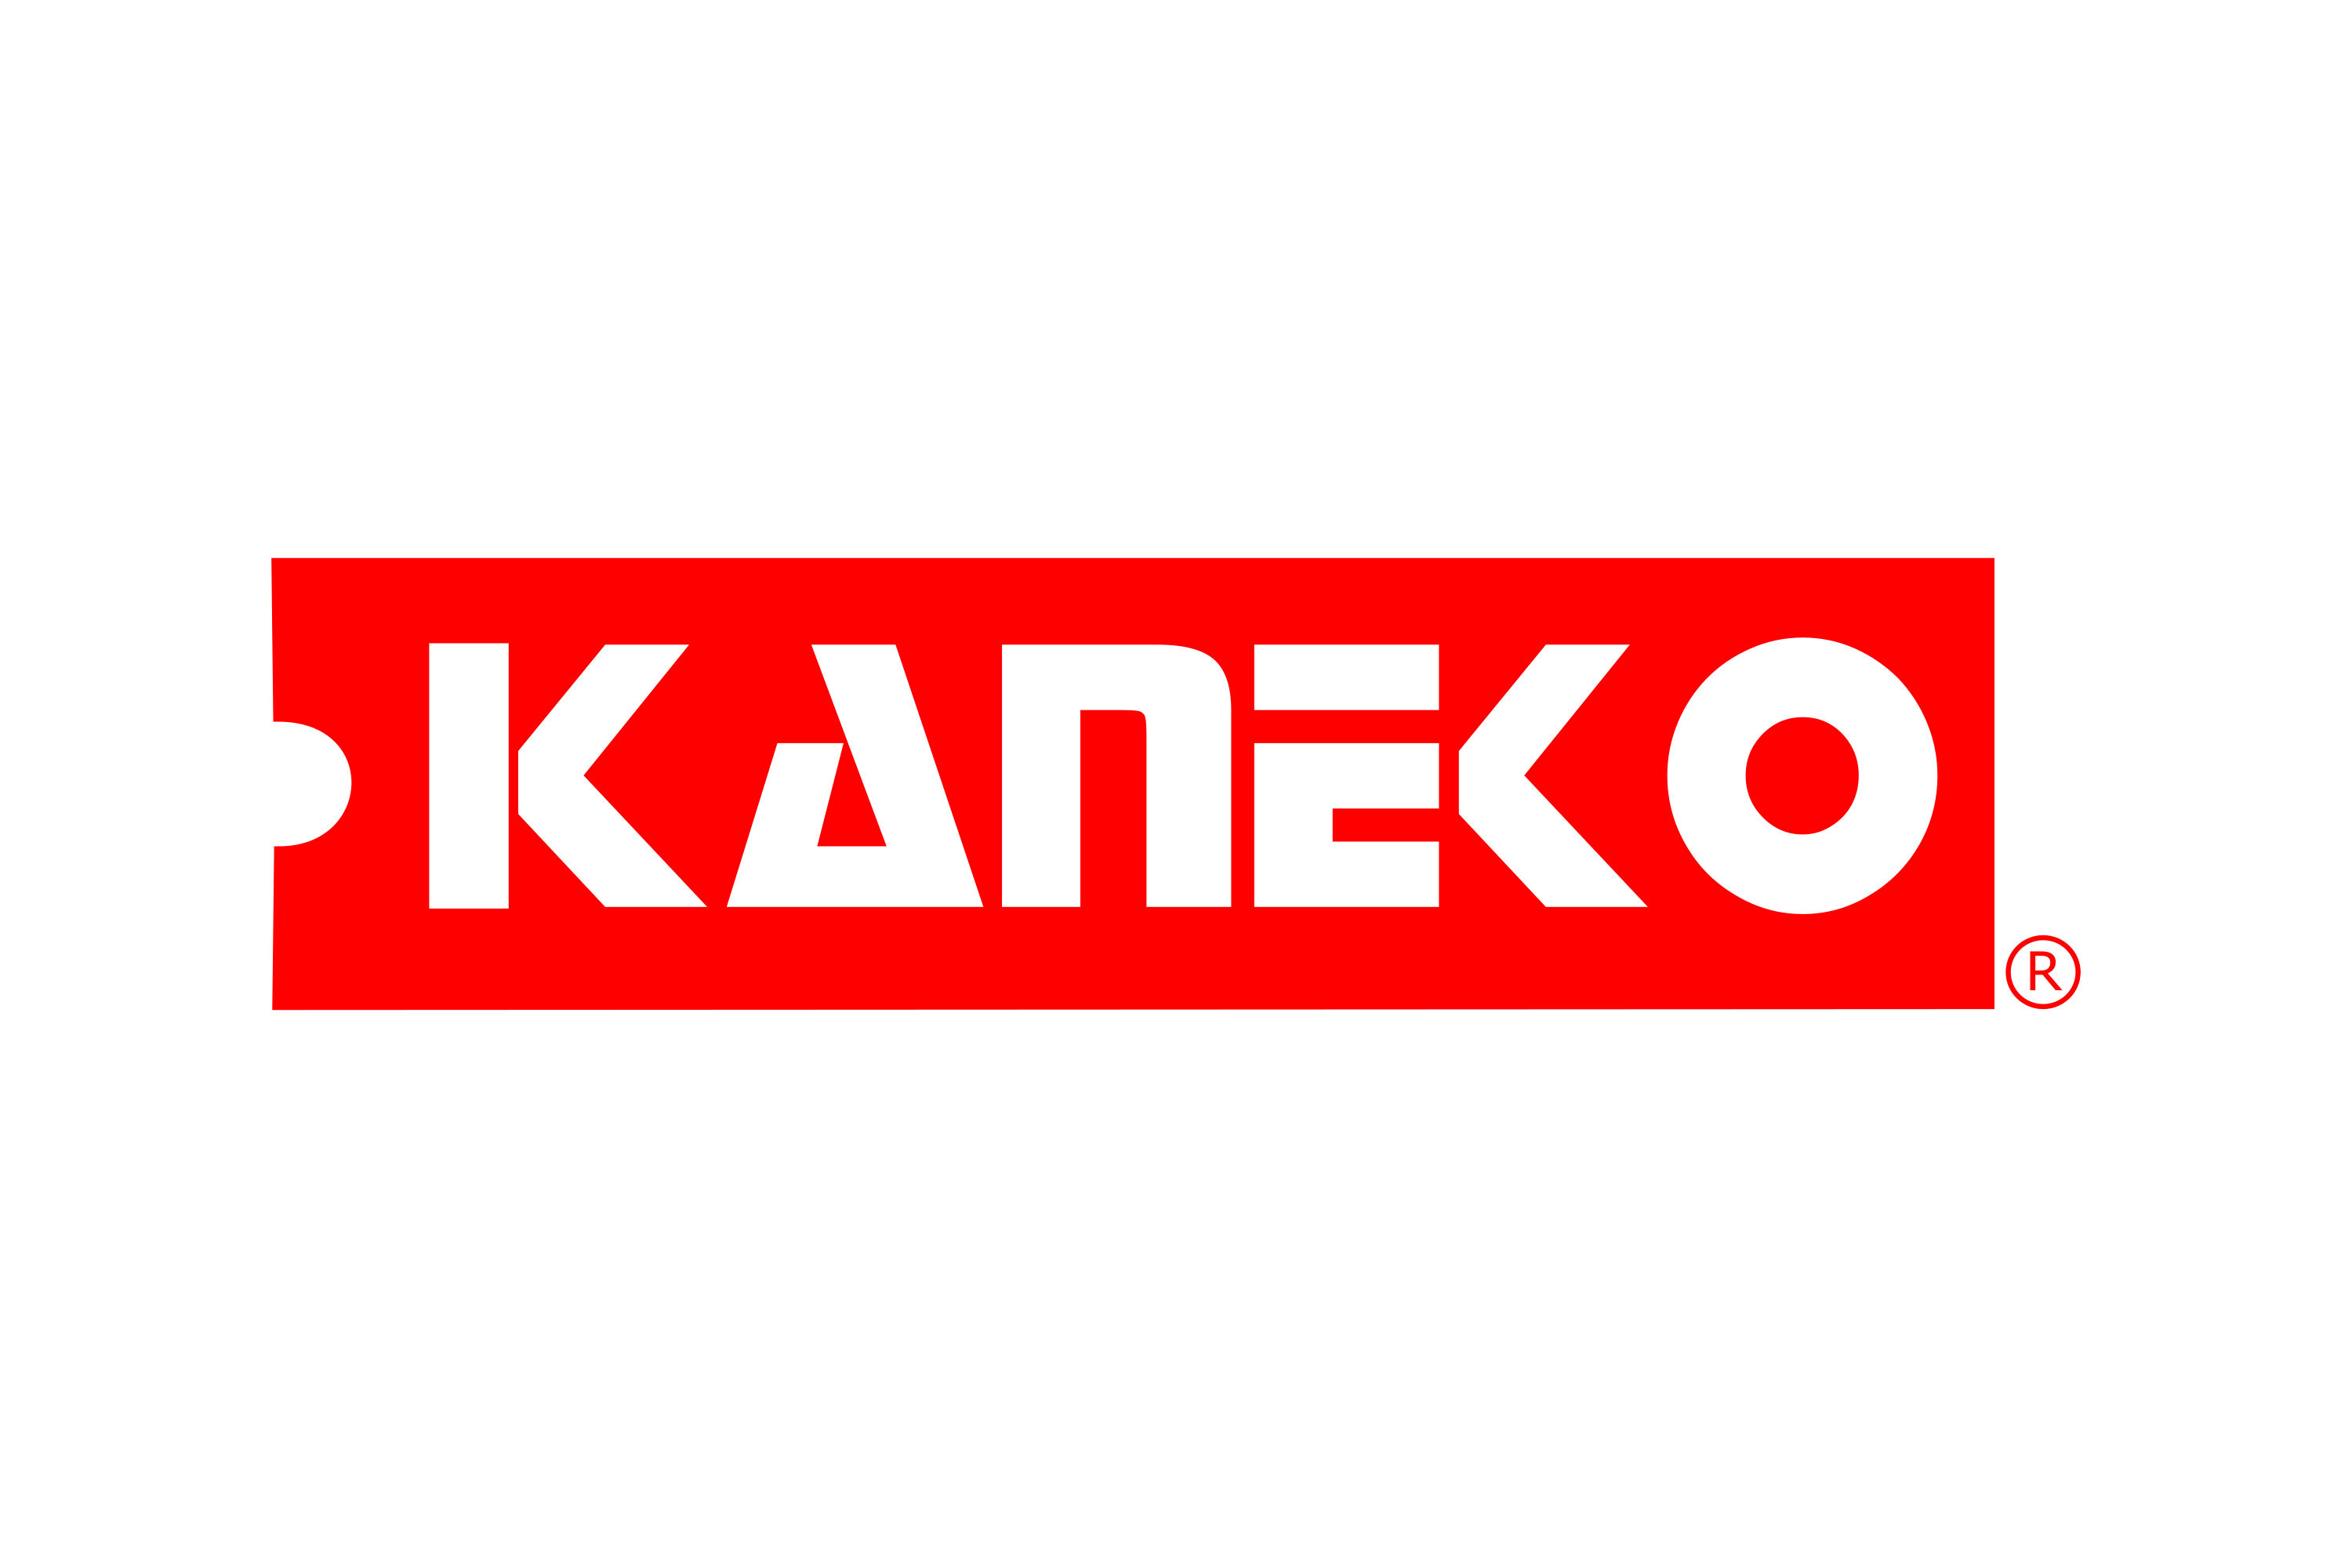 Kaneko Logo - Free download logo in SVG or PNG format